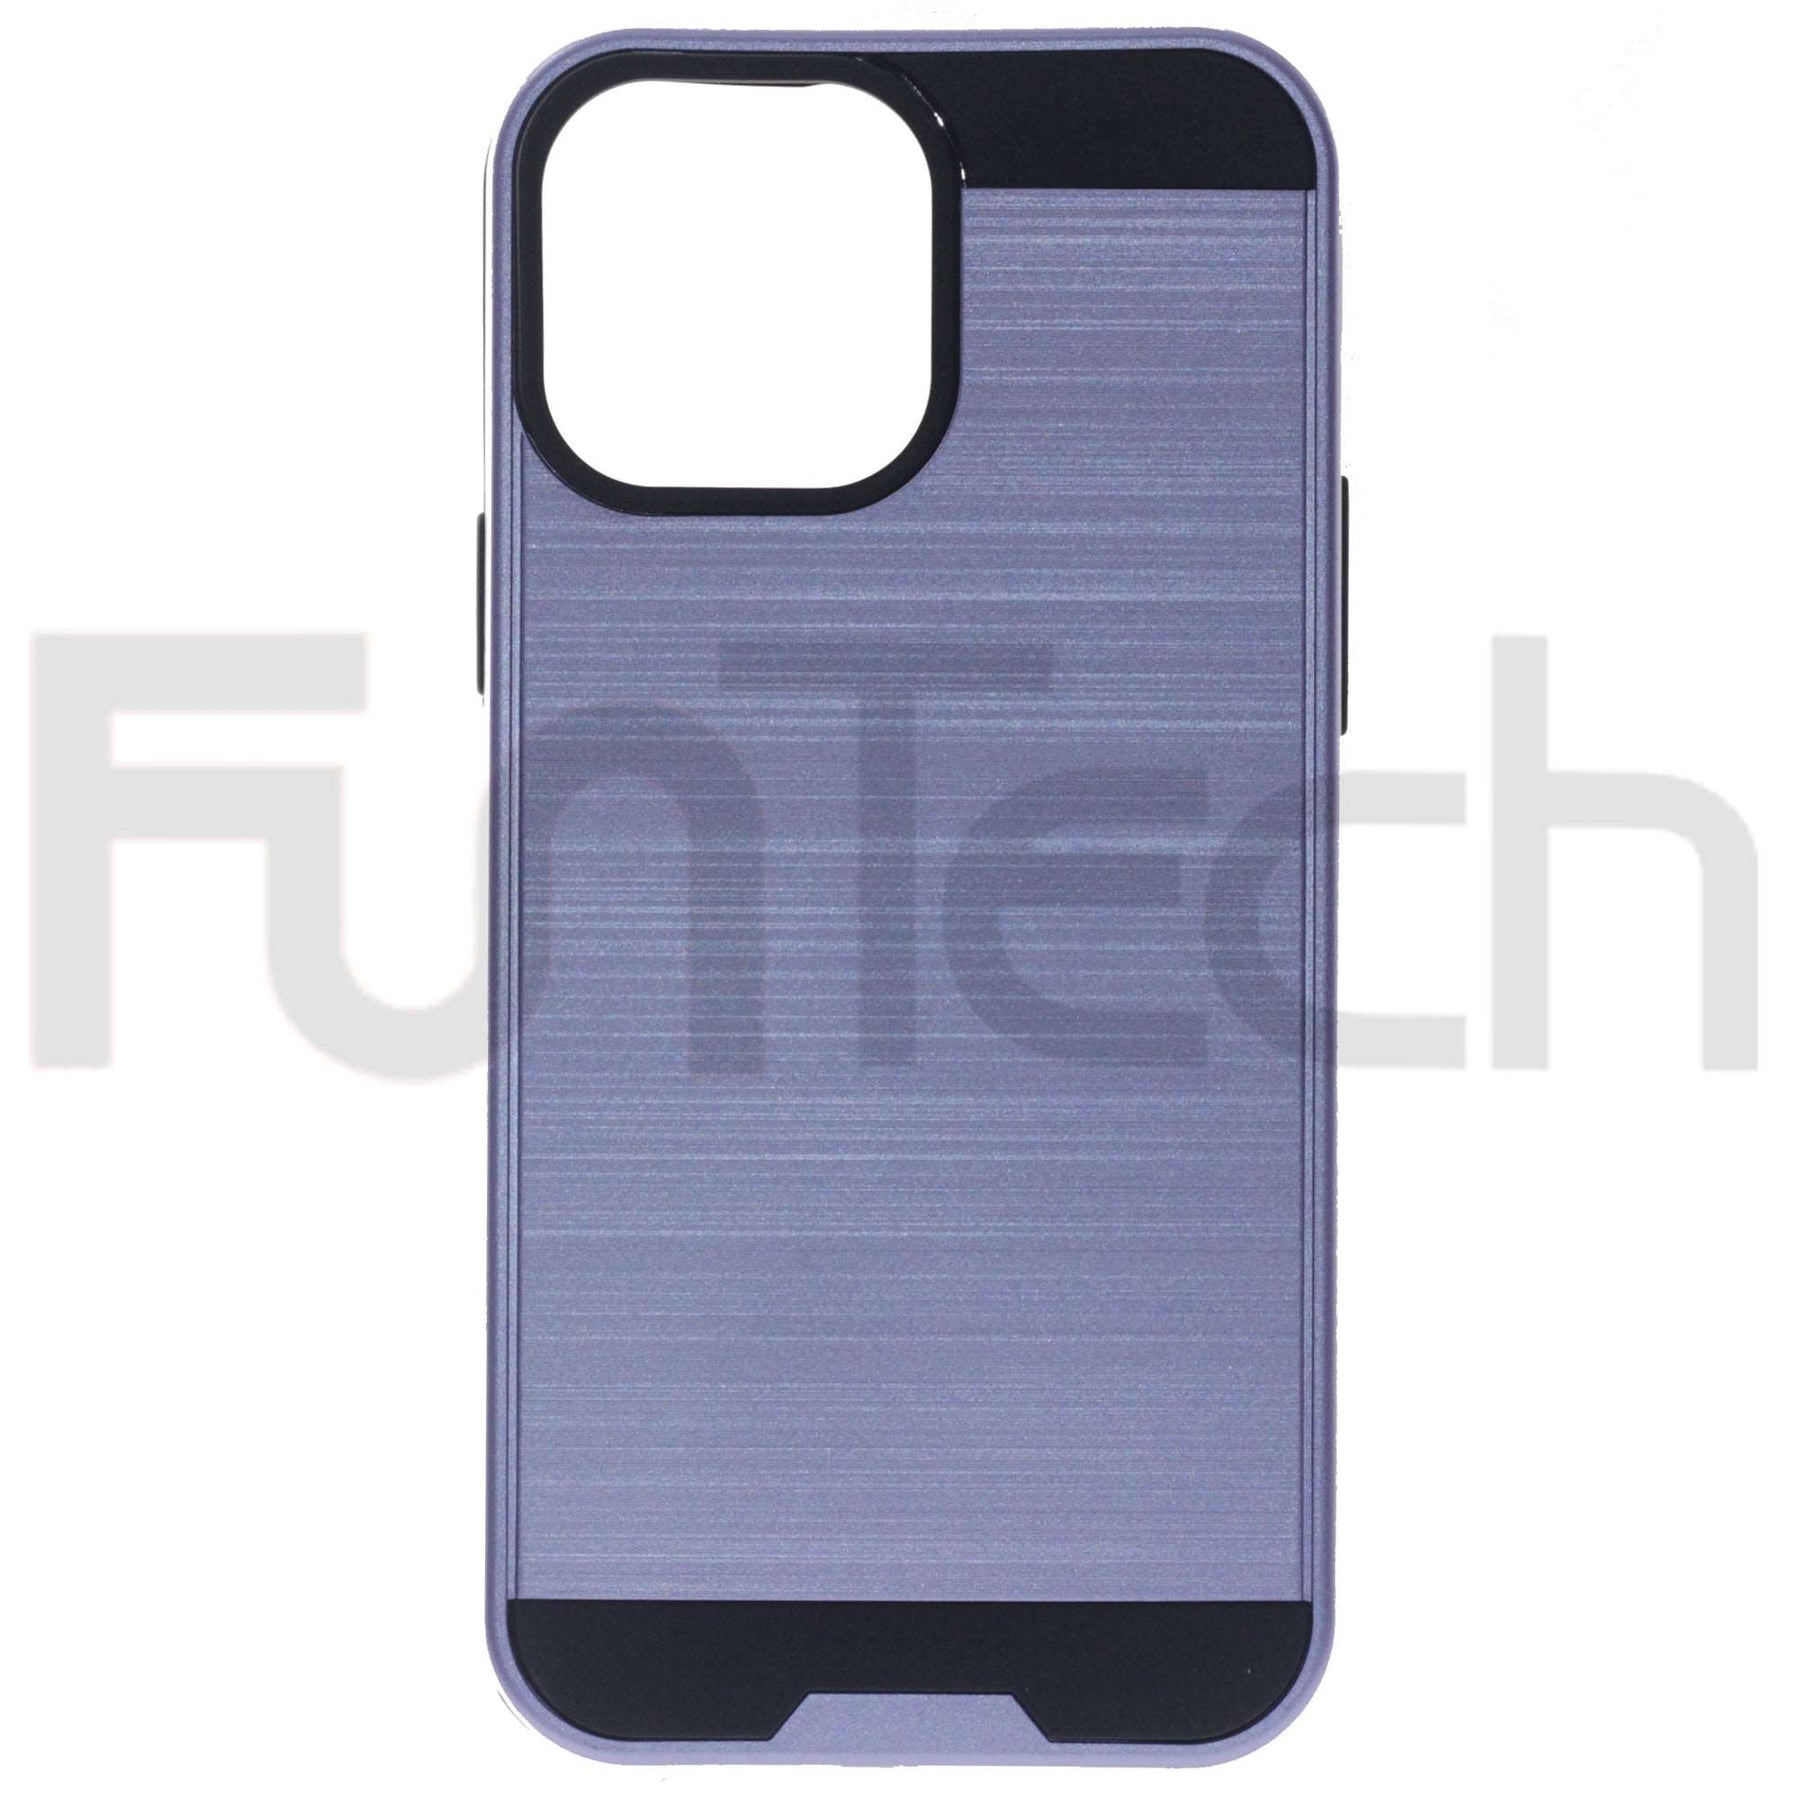 Apple iPhone 13 Mini, Slim Armor Case, Color Purple.